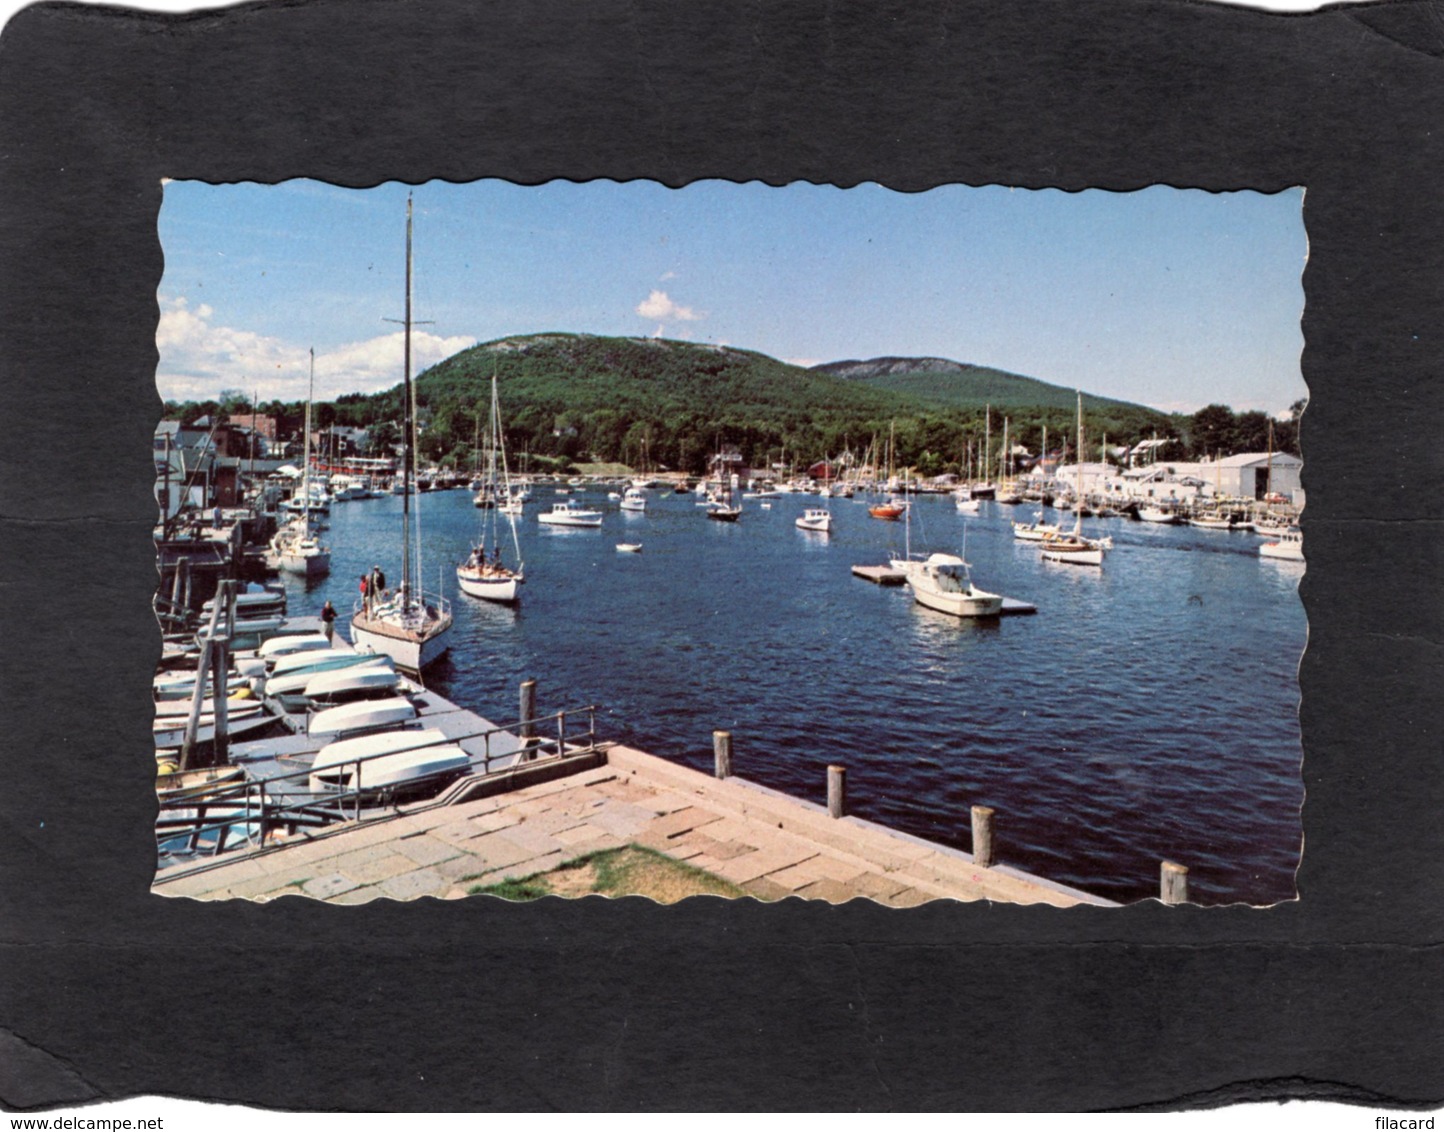 84271    Stati Uniti,  Camden,  Maine,  View Of Harbor From Yacht Club,  NV - Camden